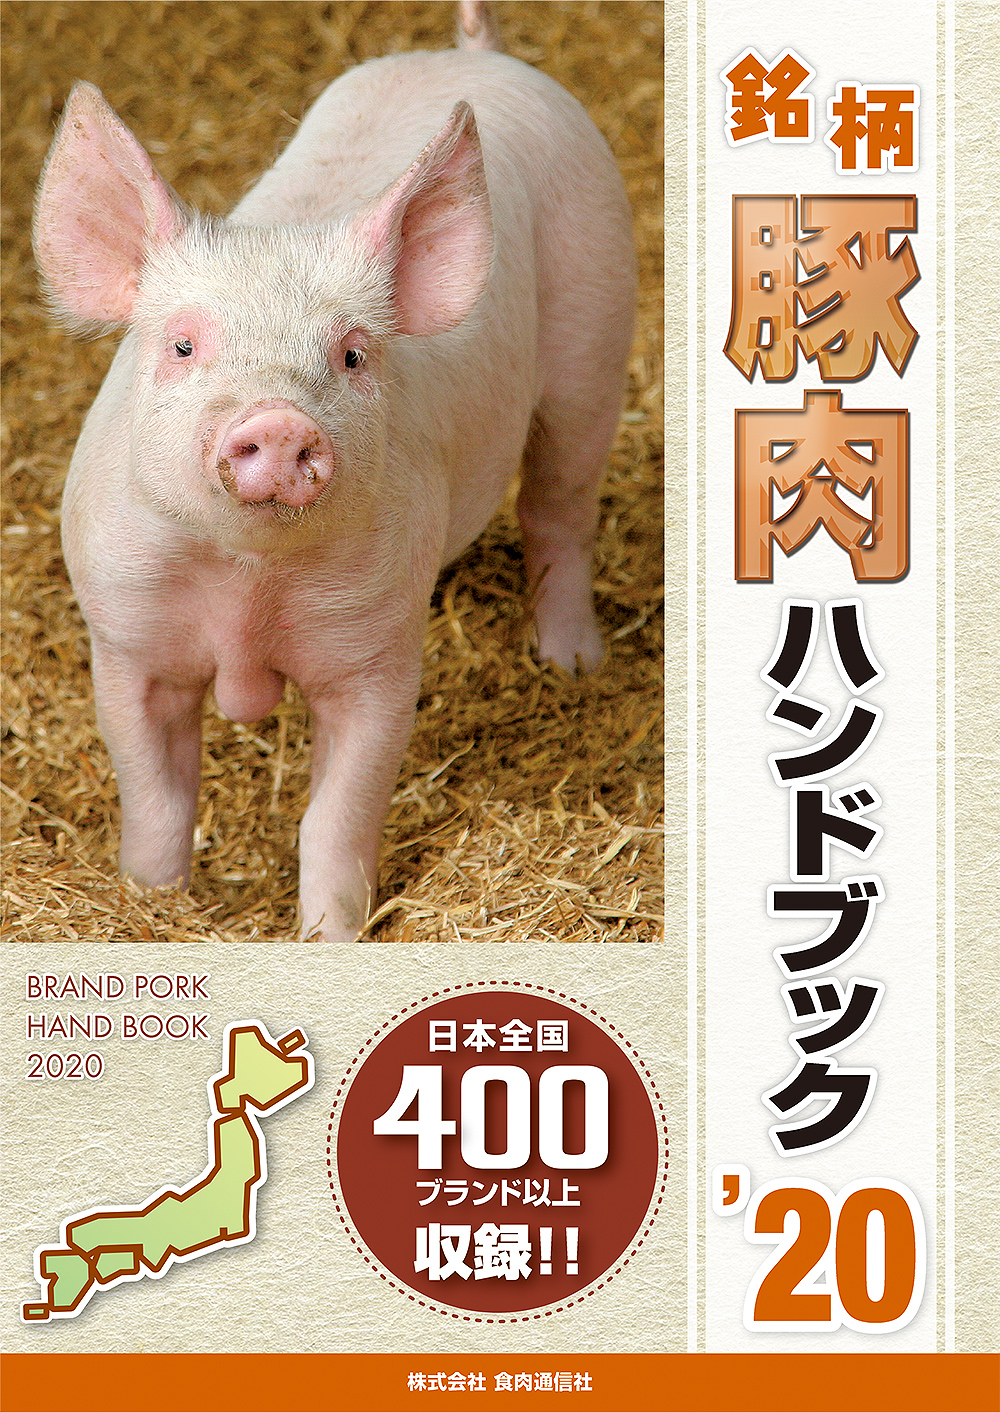 銘柄豚肉ハンドブック２０２０年版 販売開始 食肉通信社 食肉産業ニュースを迅速 正確に